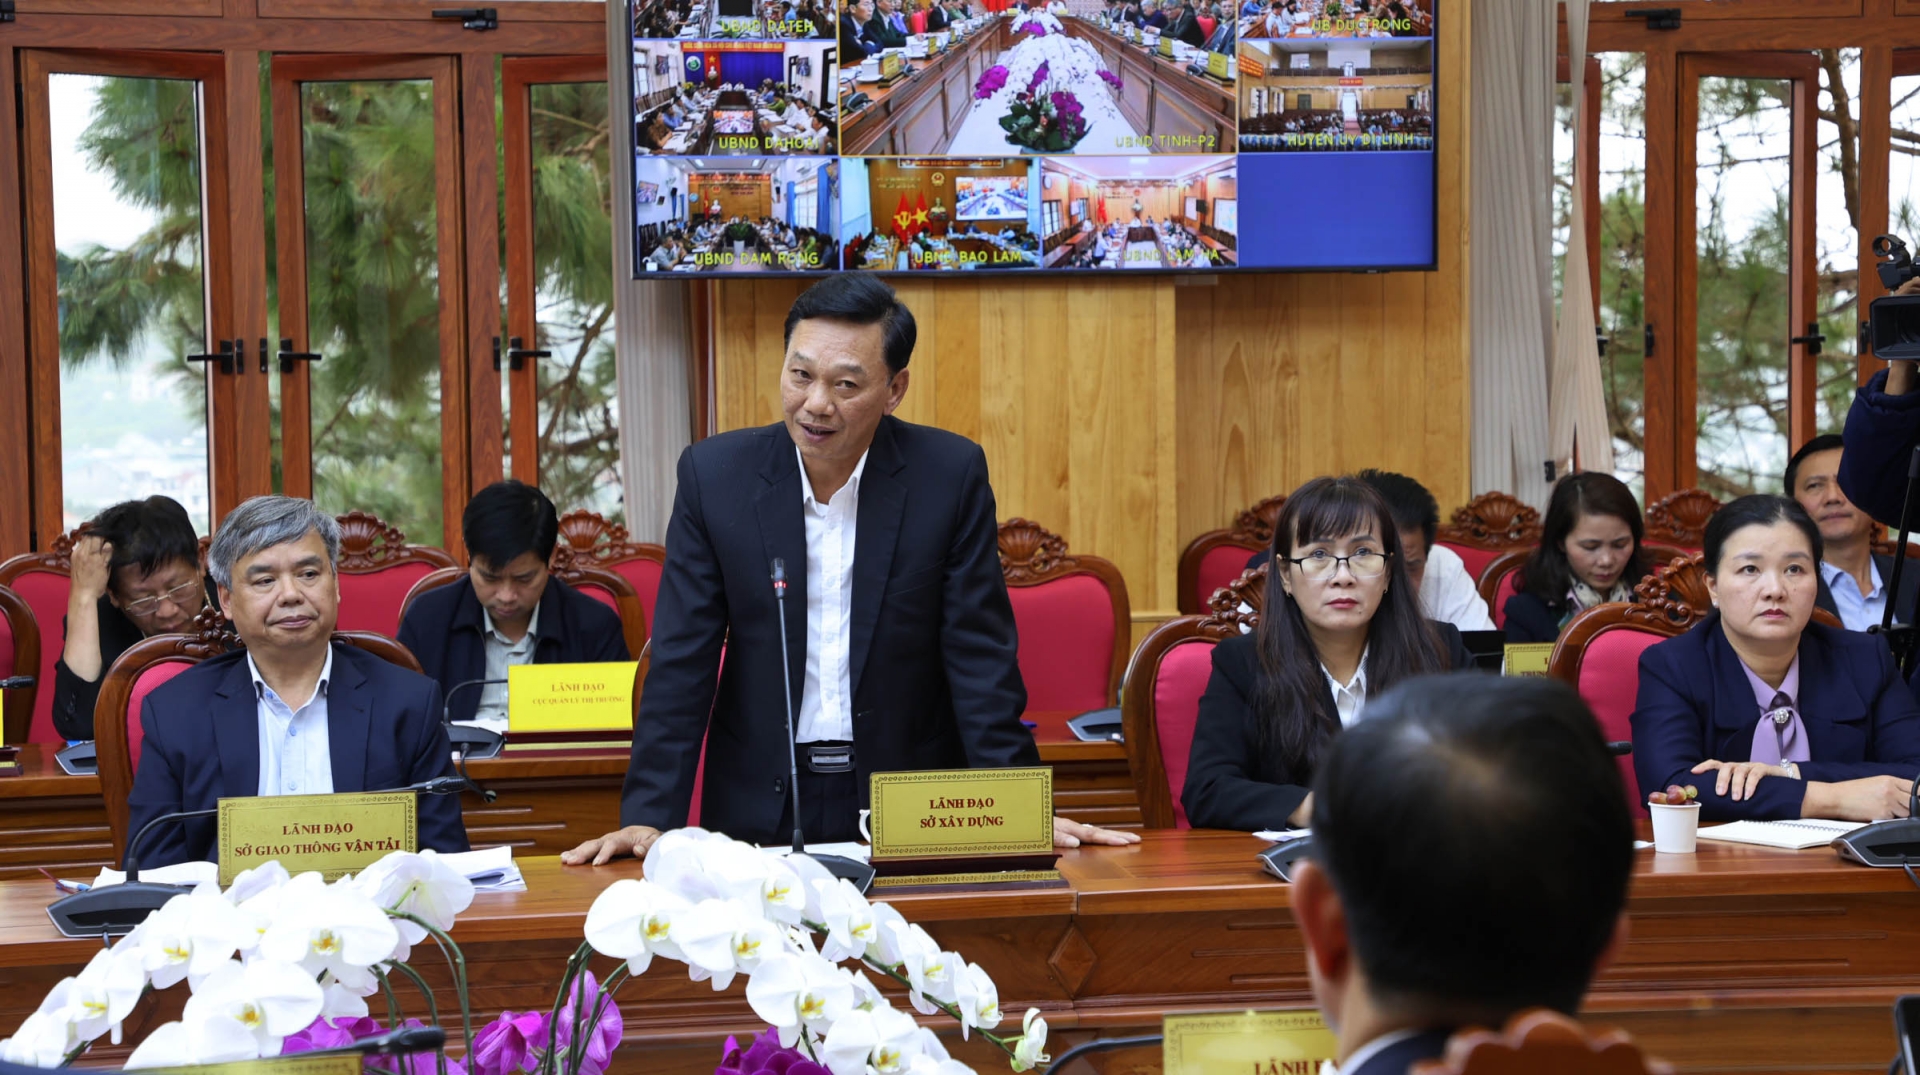 Ông Lê Quang Trung - Giám đốc Sở Xây dựng, trình bày vướng tiến độ giải ngân 